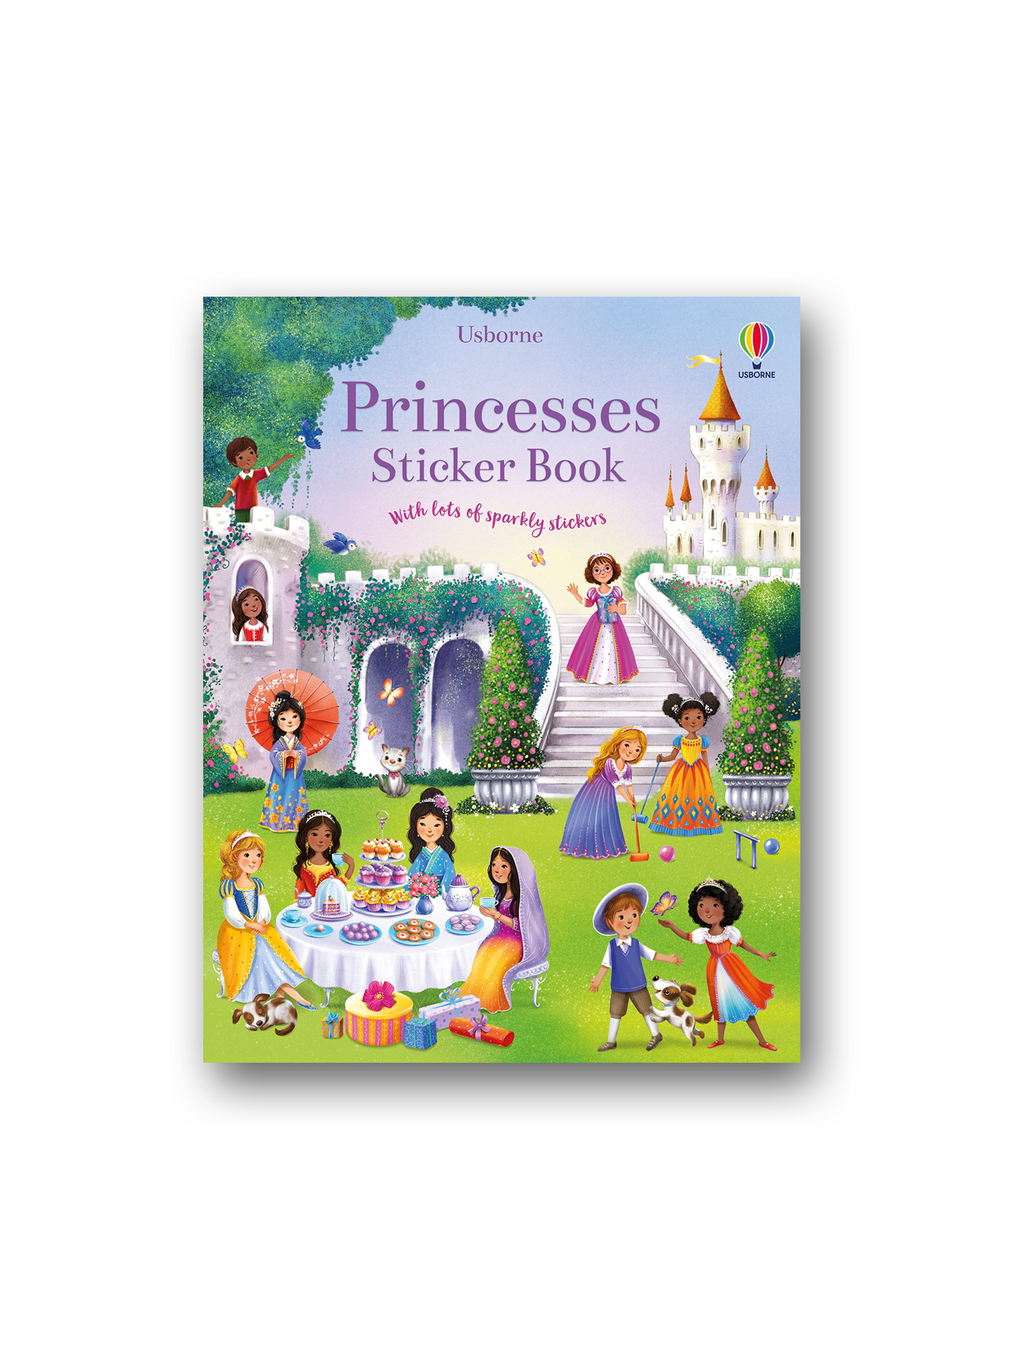 Princesses Sticker Book